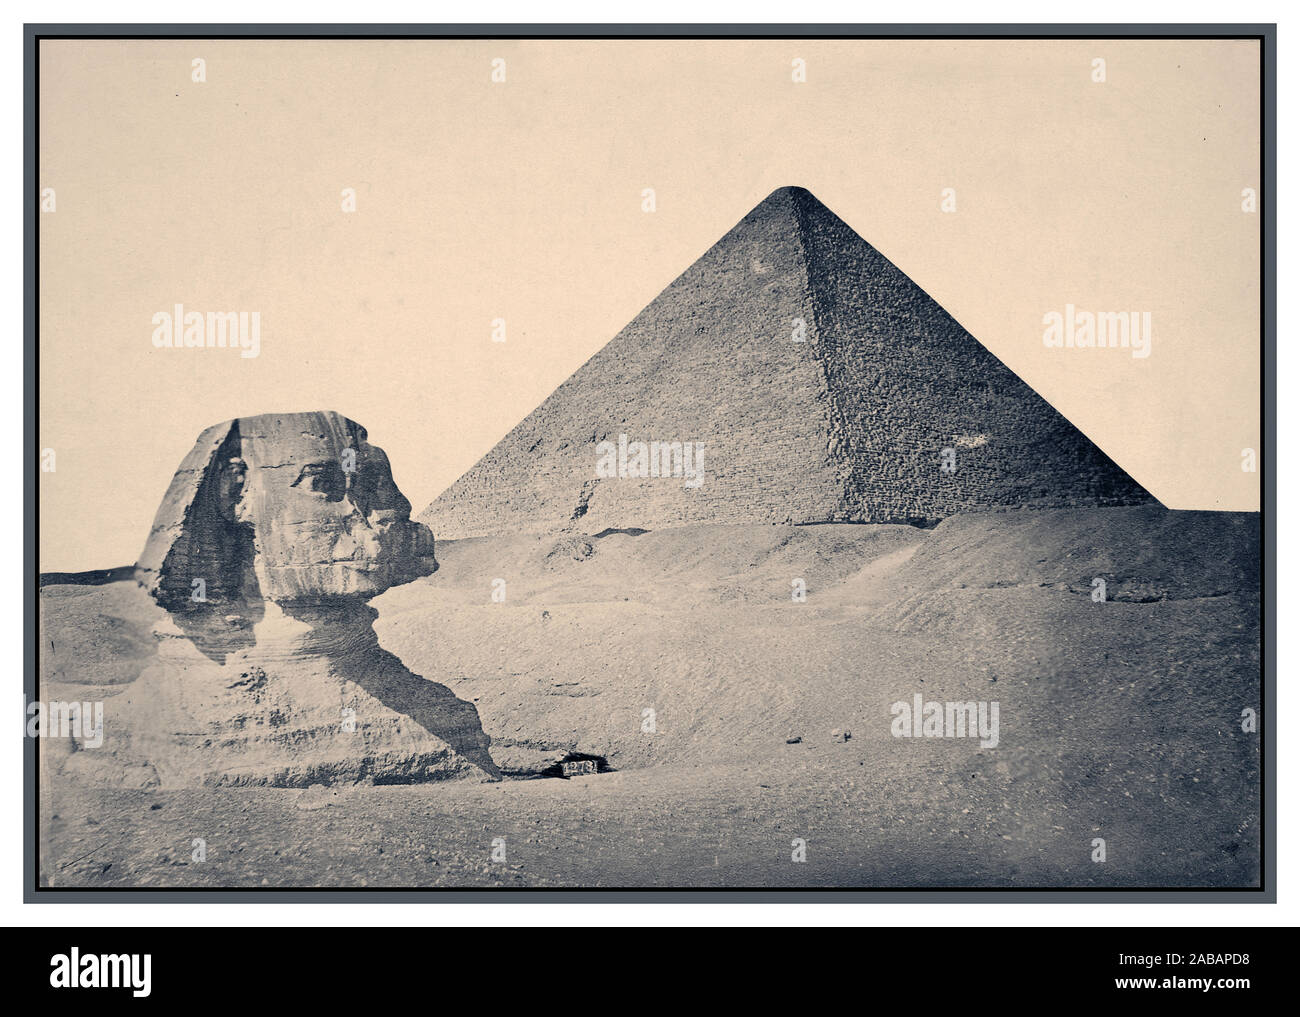 1880 Vintage Giza. Piramide di Khafre e Sfinge 1880 B&W immagine seppia di Giza. ca. 2575 BC-ca. 2465 BC (piramide e Sfinge) Piramidi di Giza, Muḩāfaz̧at Maţrūḩ, Egitto Africa egiziana antica egiziana, quarto Dynasty Grande Sfinge di Giza, a cui viene comunemente fatto riferimento come la Sfinge di Giza o semplicemente la Sfinge, è una statua di pietra calcarea di una sfinge reclinabili, una mitica creatura con il corpo di un leone e la testa di un uomo rivolto direttamente da ovest a est, che sorge su un altopiano di Giza sulla sponda ovest del Nilo in Giza, Egitto. Foto Stock